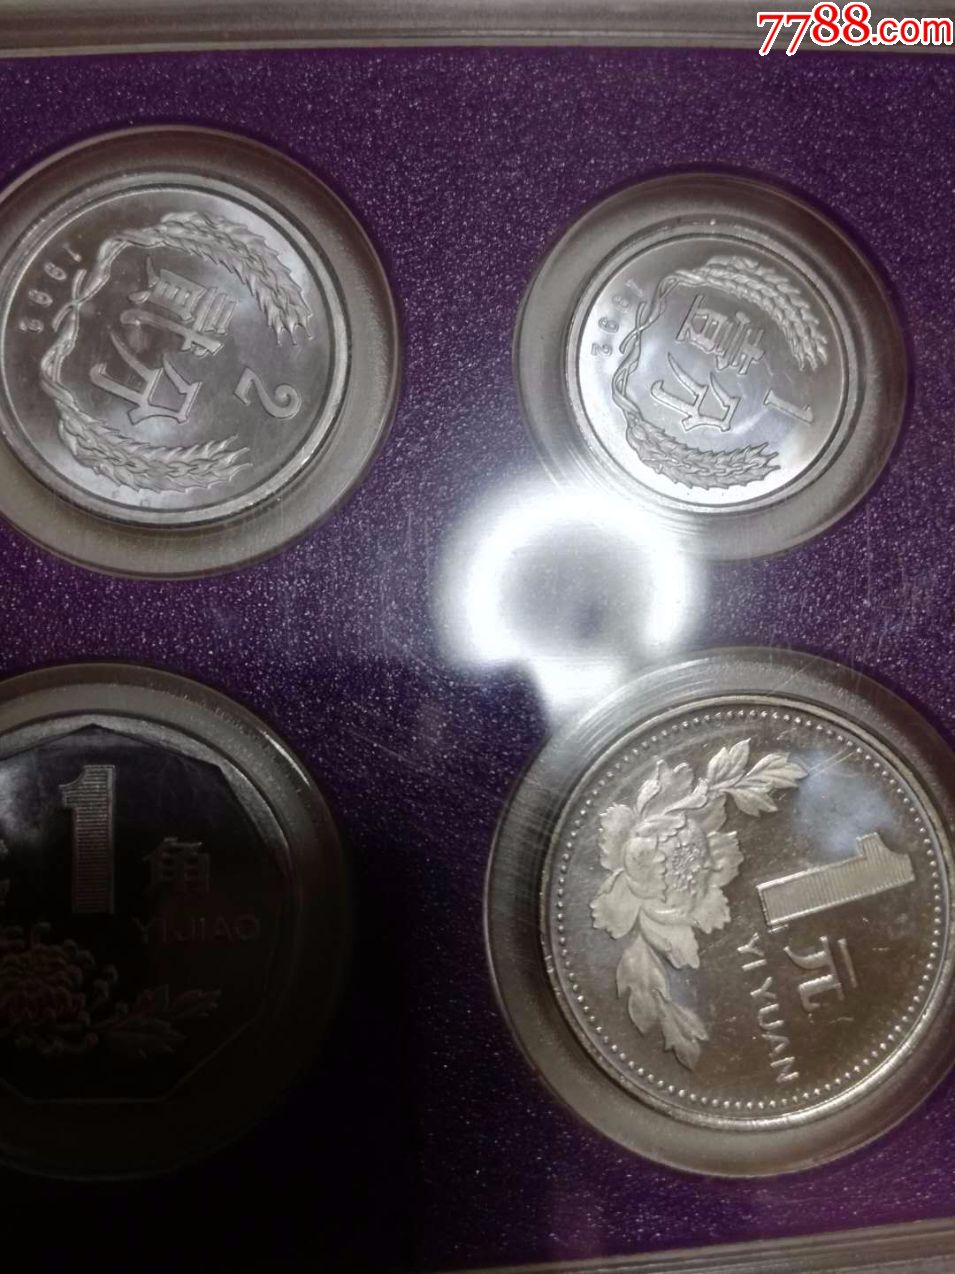 中国硬币(精制)大珍品,1992年精制硬币1盒6个,镜面抛光,十分漂亮,罕见